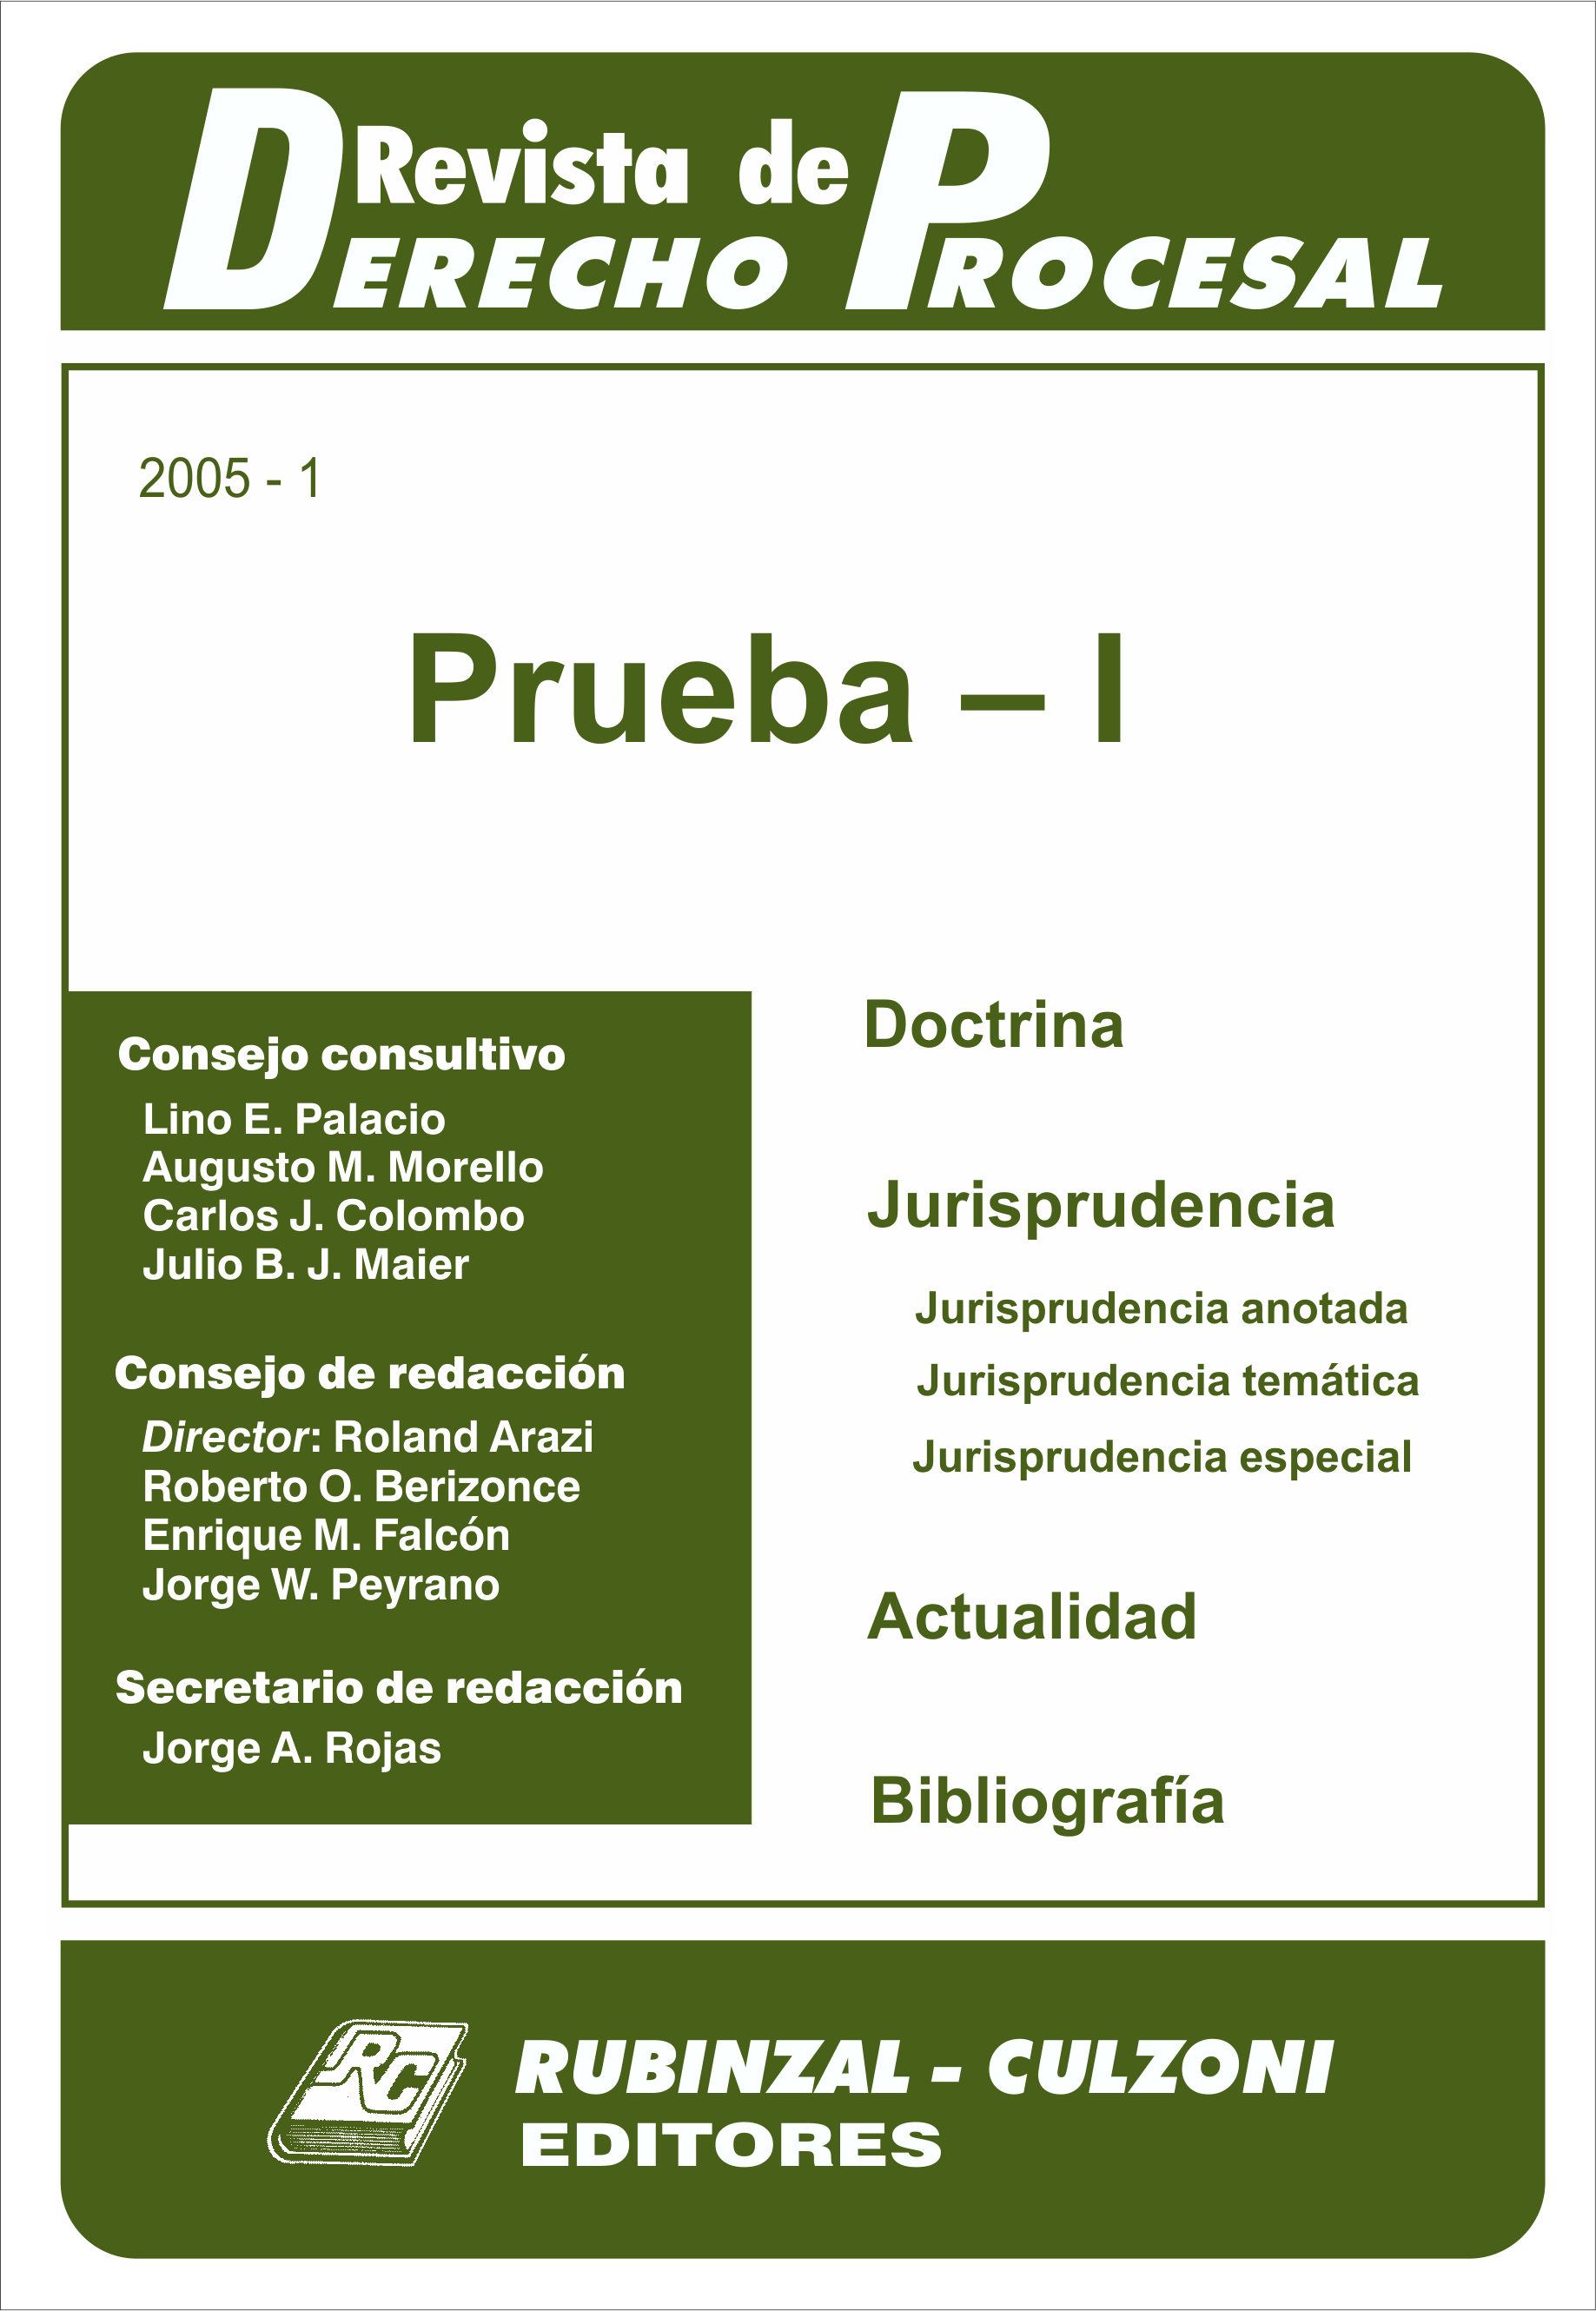 Revista de Derecho Procesal - Prueba - I